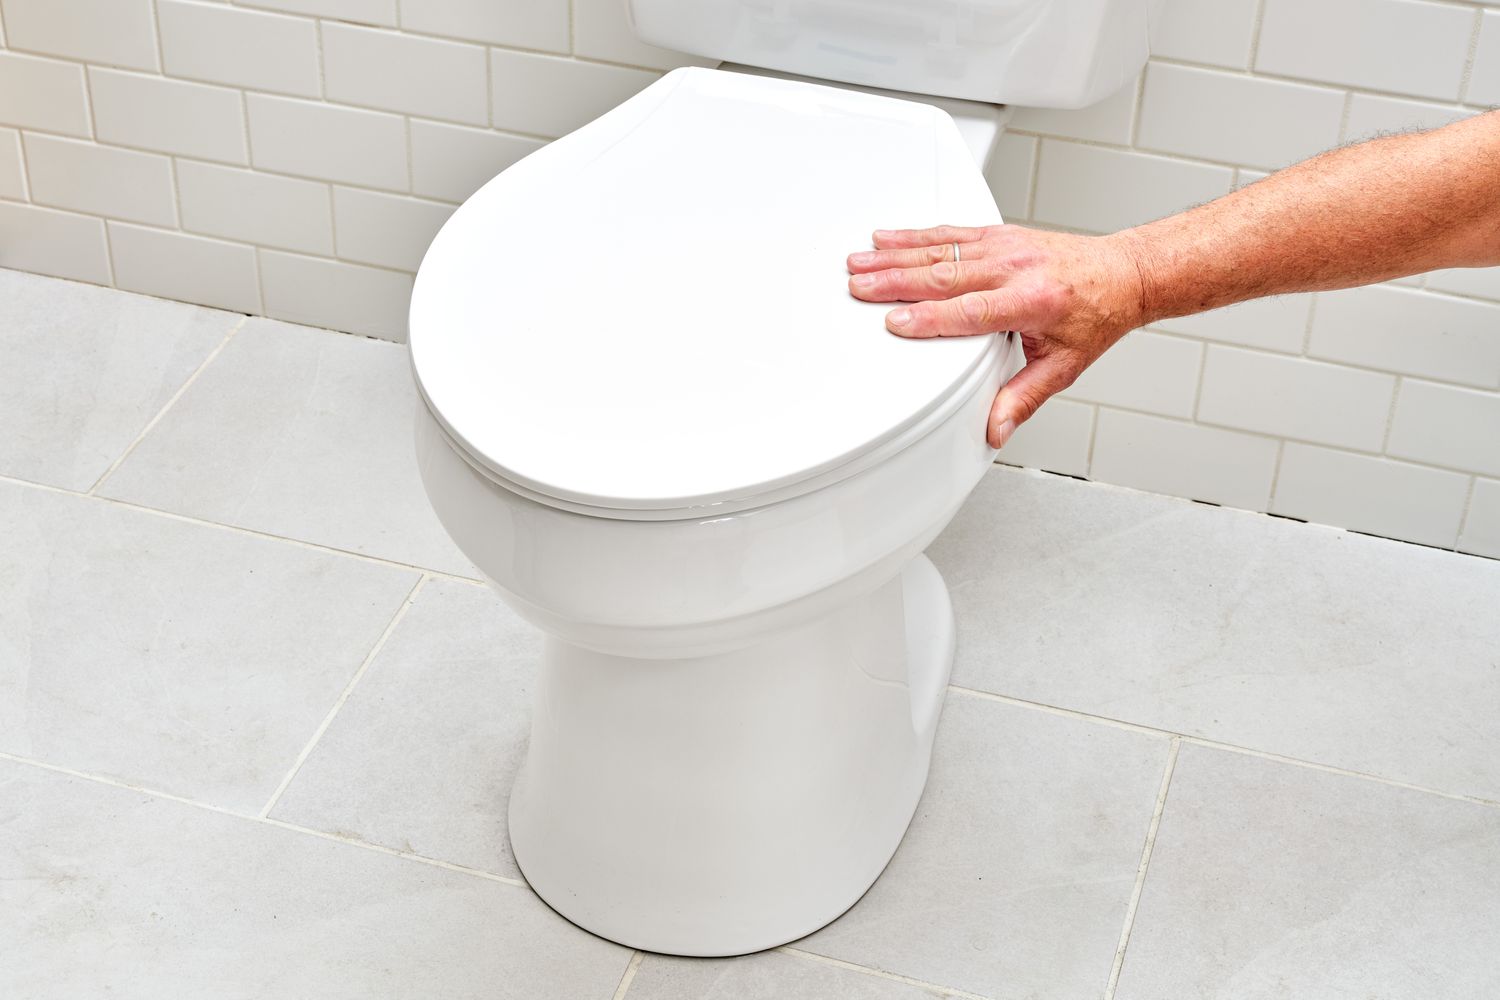 Vaso sanitário branco sendo mexido com a mão